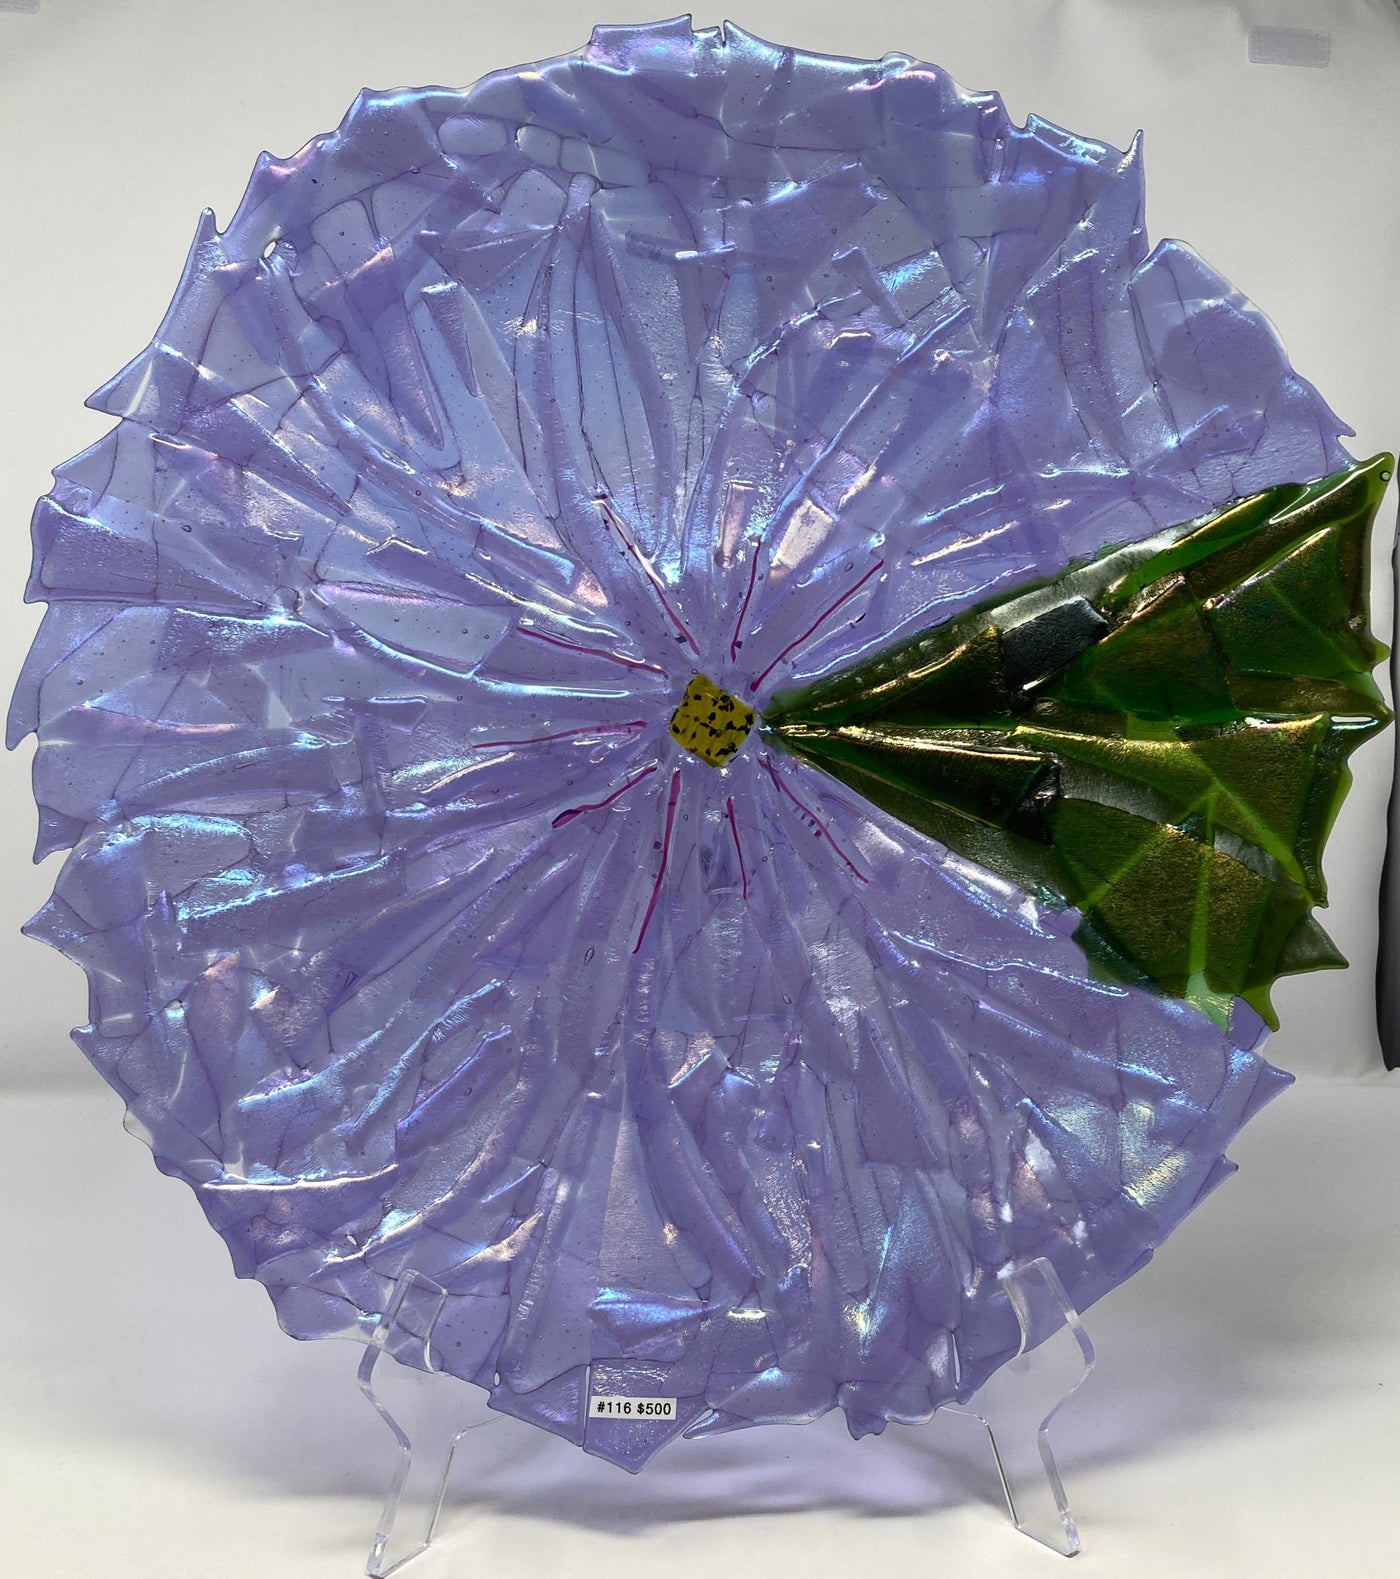 Lavendar Vetro Fiori Bowl by Mesolini Glass Studio